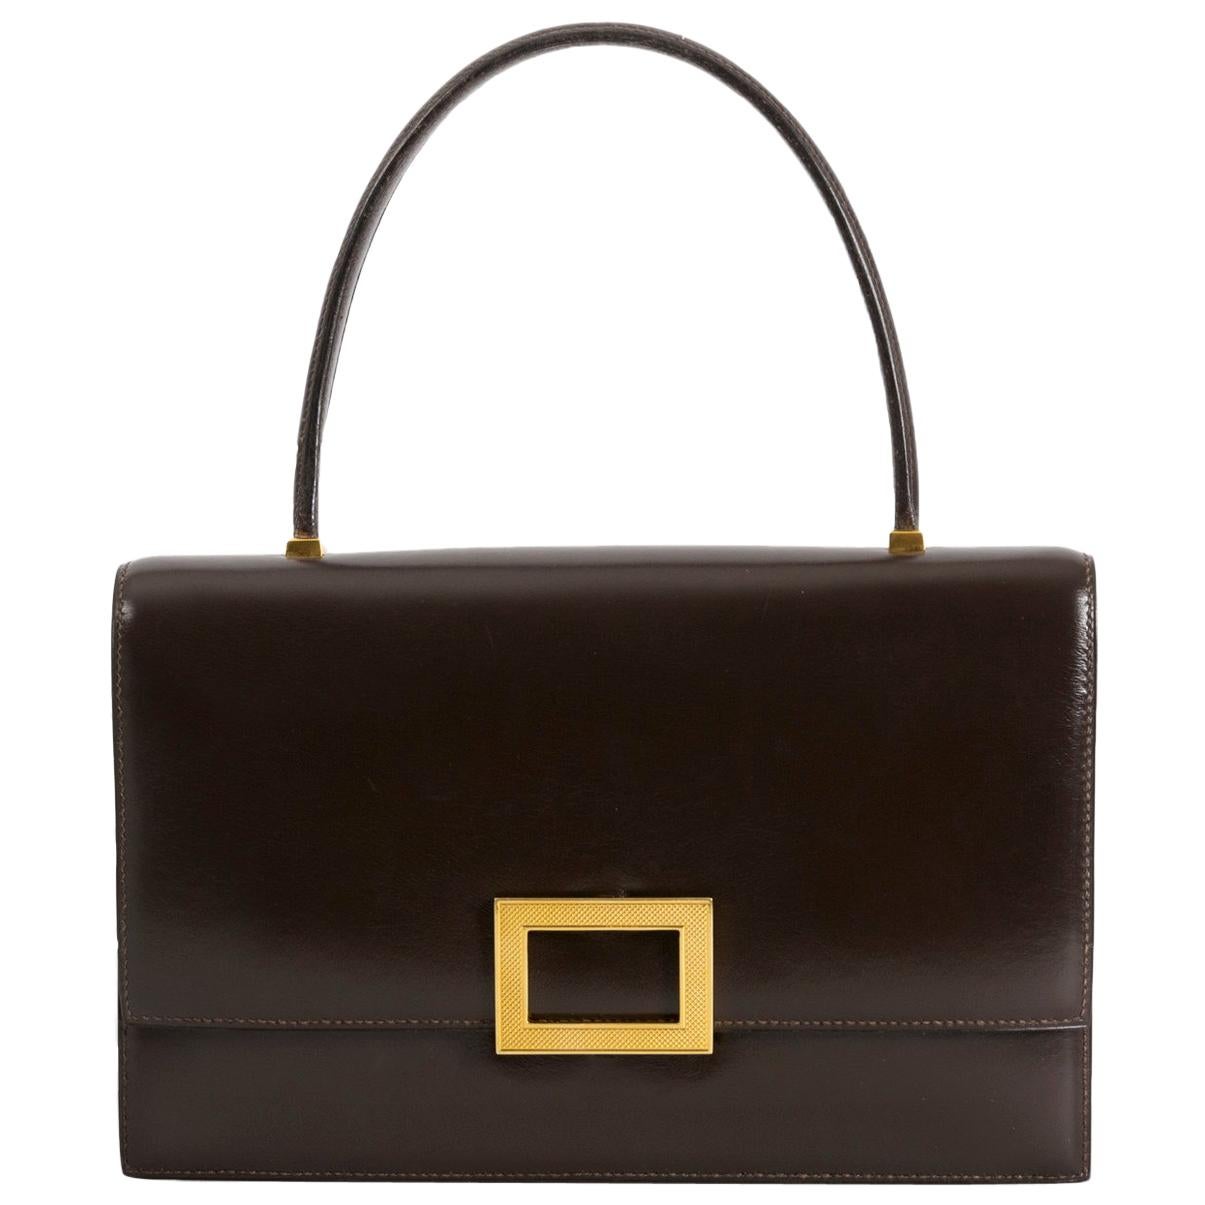 Hermès Brown Leather Top Handle Bag